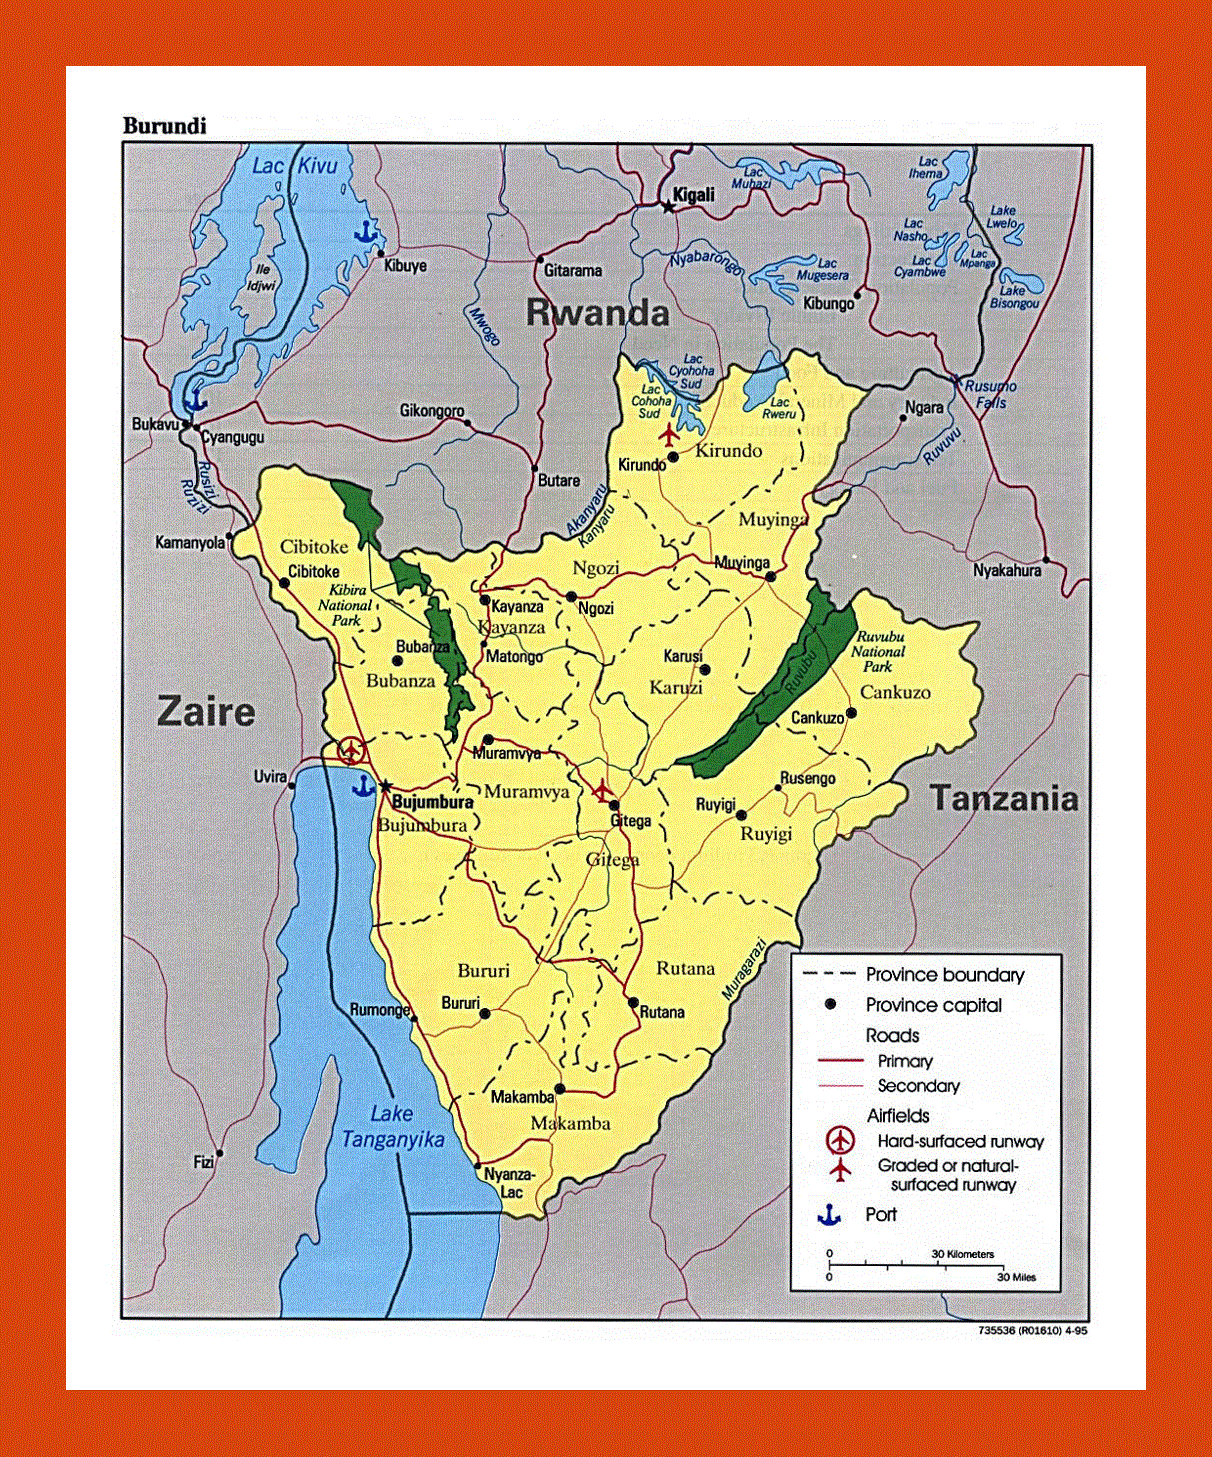 Map of Burundi - 1995